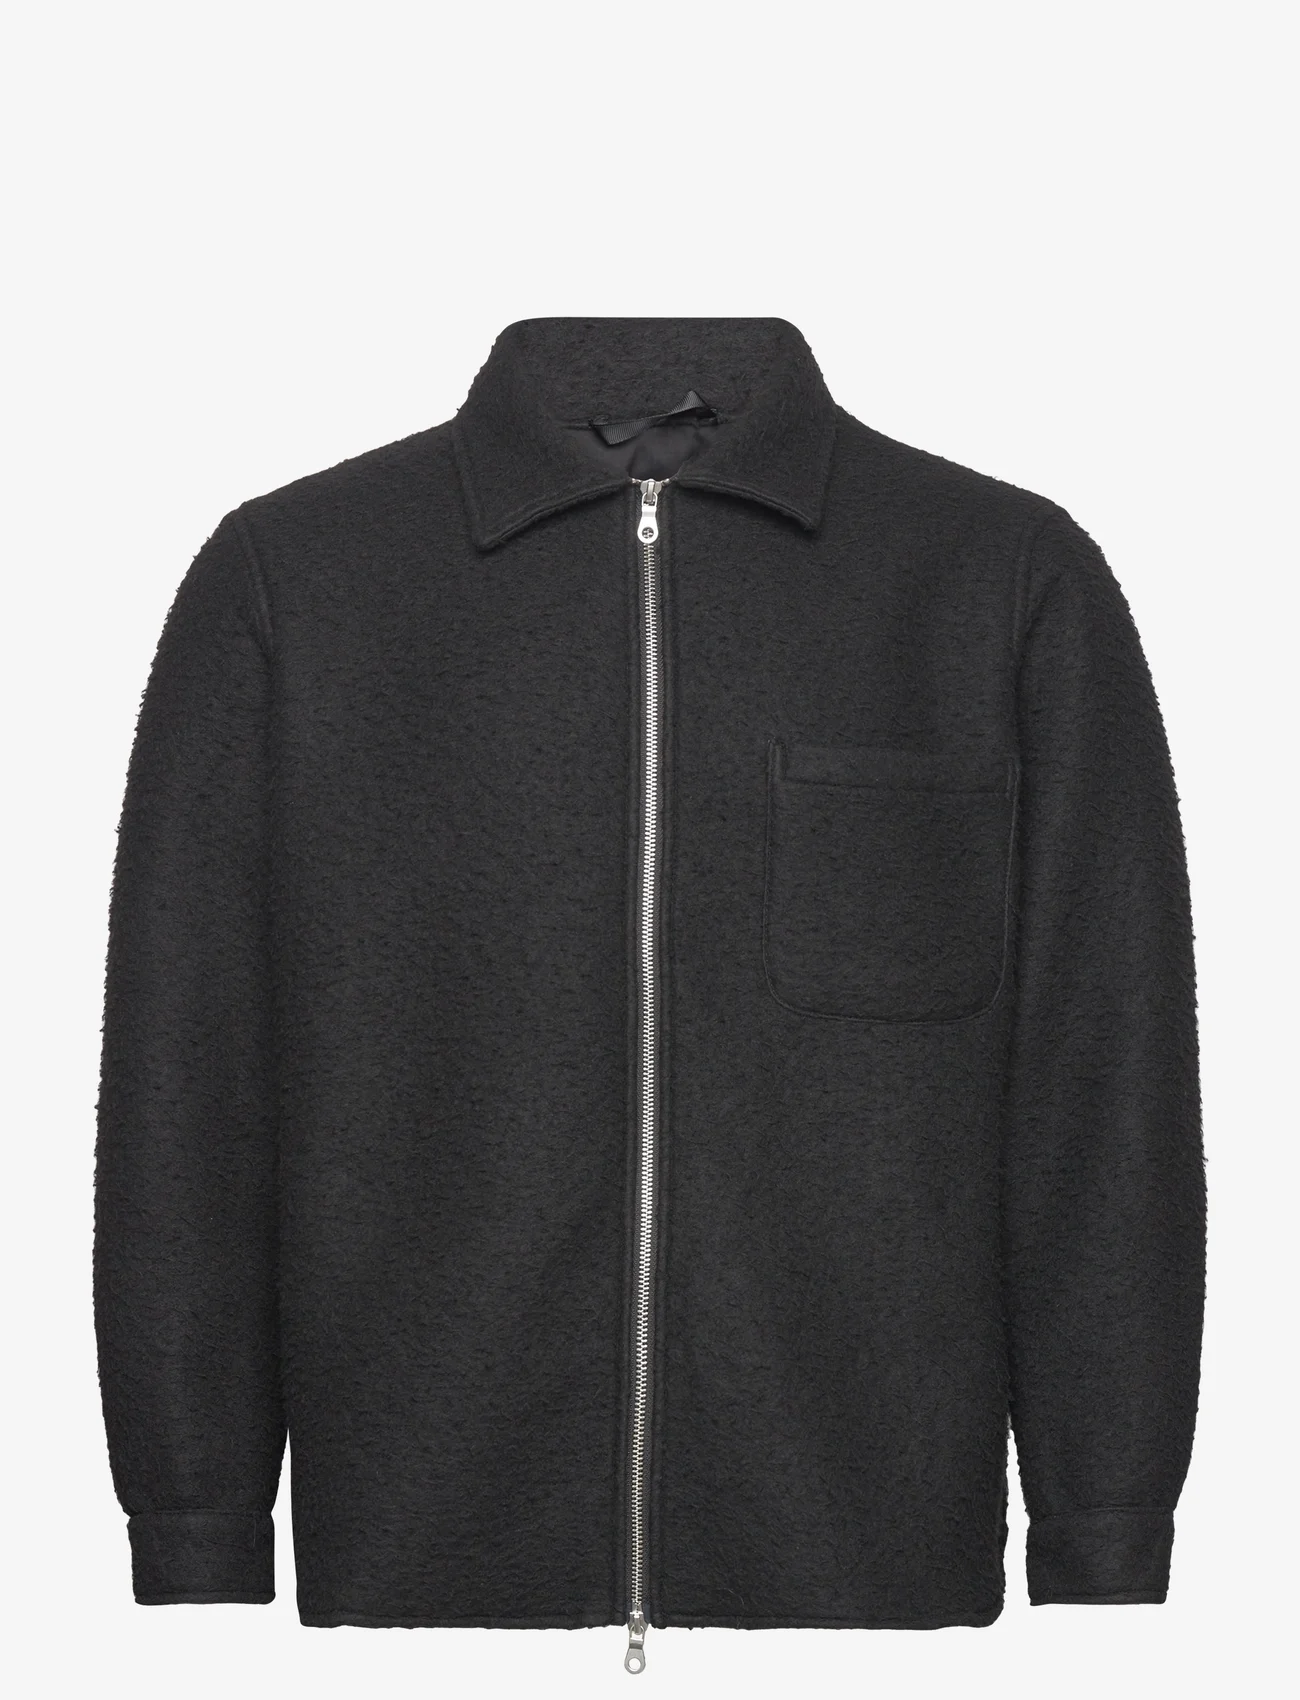 Garment Project - Teddy Unlined Jacket - wool jackets - 999 black - 0